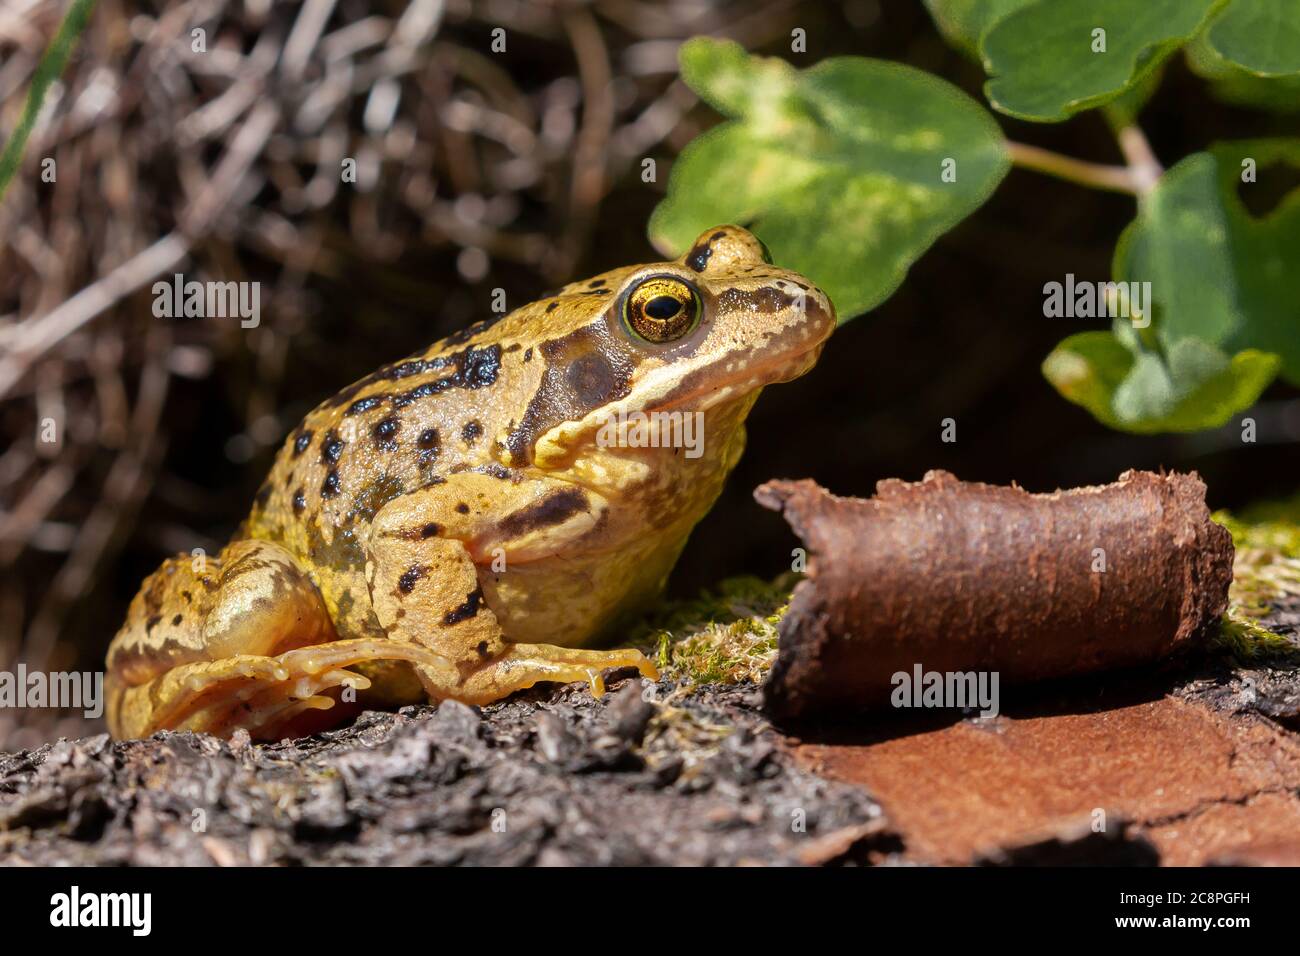 Der Common Frog (Rana temporaria) aus der Nähe ist die bekannteste Amphibie Großbritanniens, aber in einem ungewöhnlichen Gelb mit schwarzen Streifen Färbung. Stockfoto